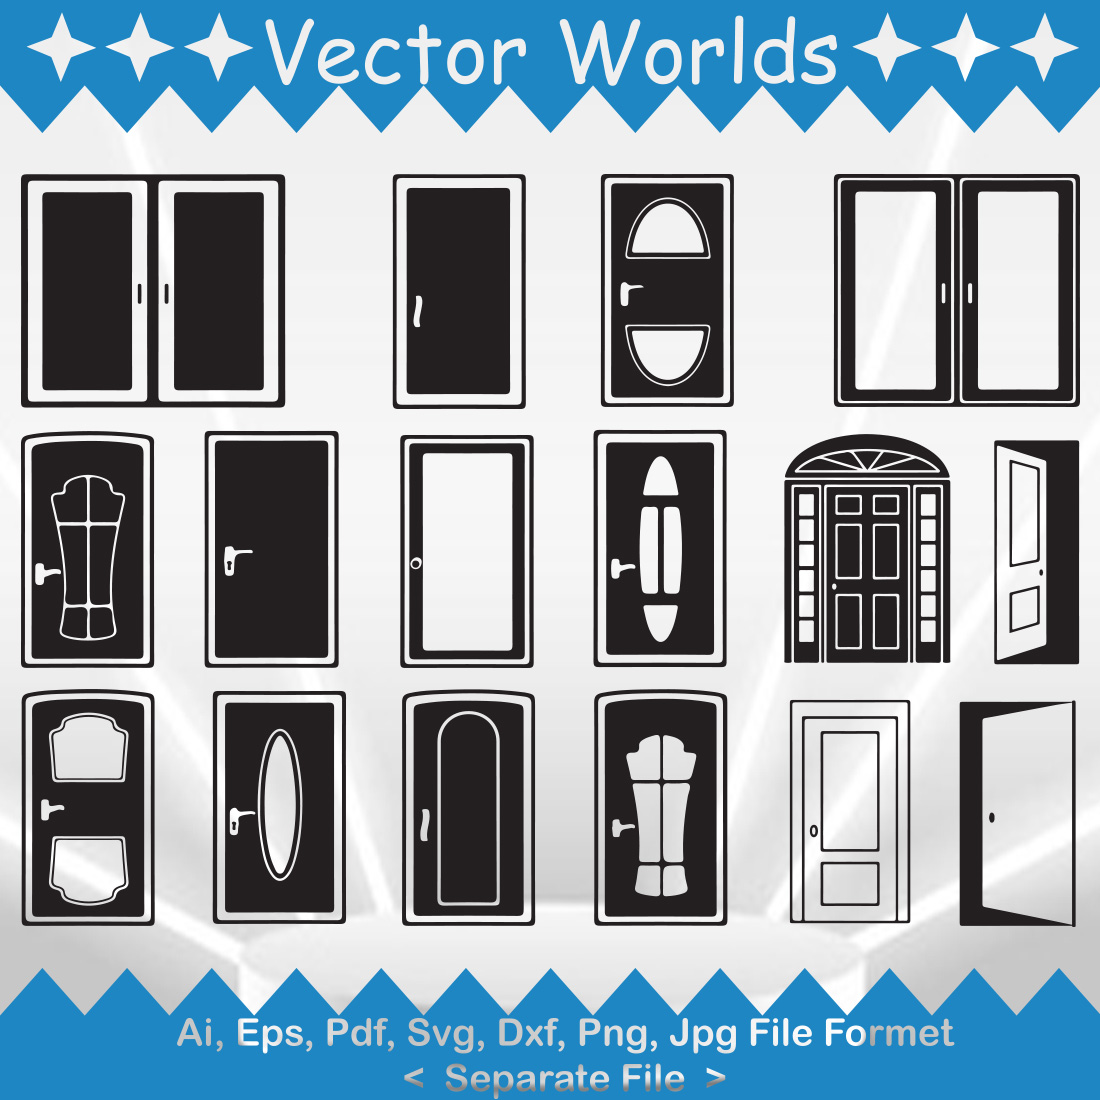 A set of unique door silhouette images